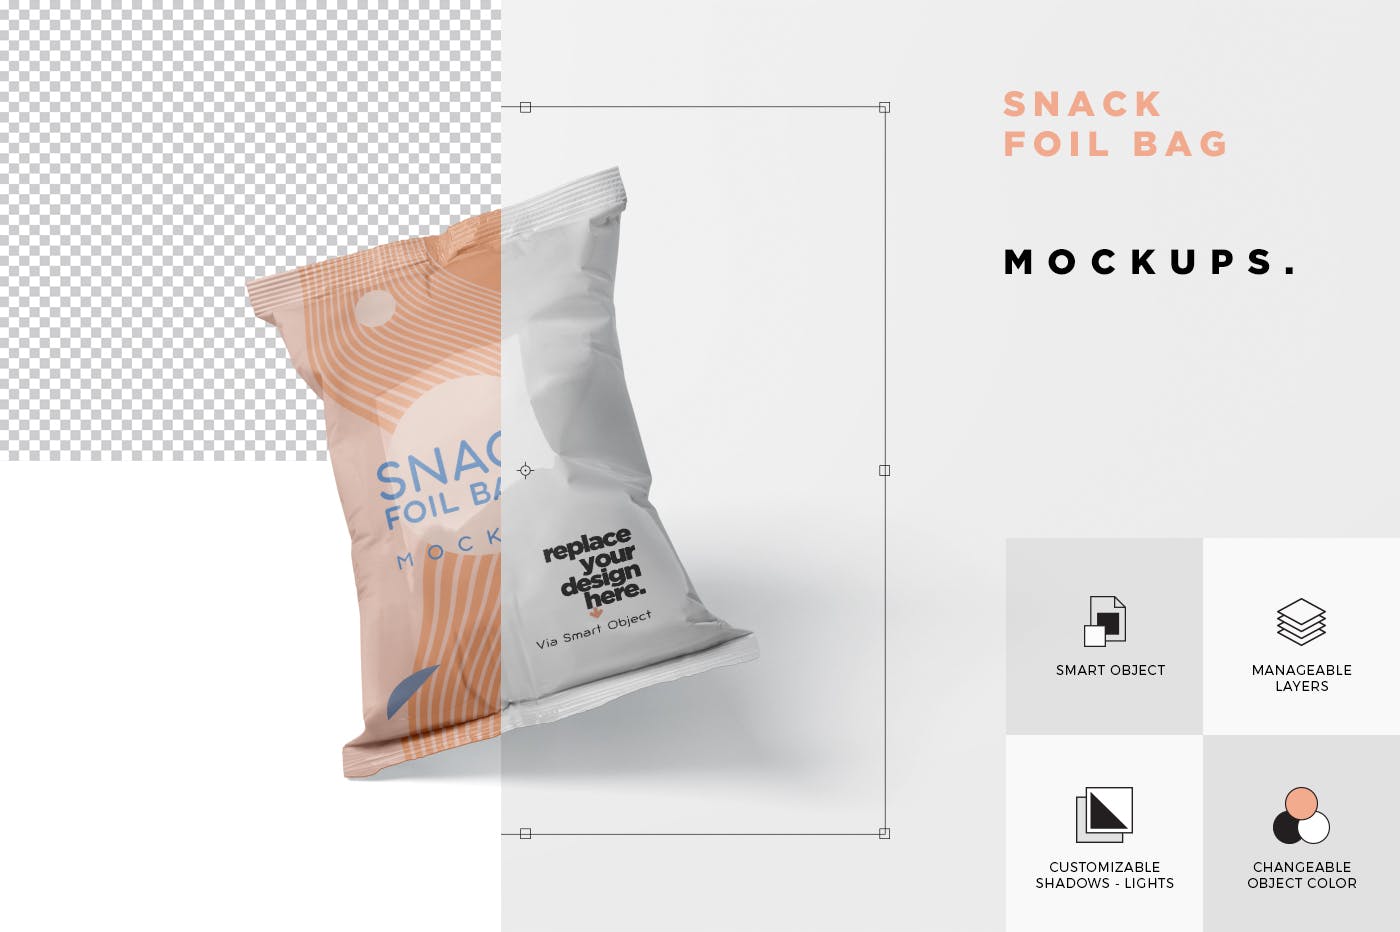 小吃零食铝箔袋/塑料包装袋设计图素材库精选 Snack Foil Bag Mockup – Plastic插图(5)